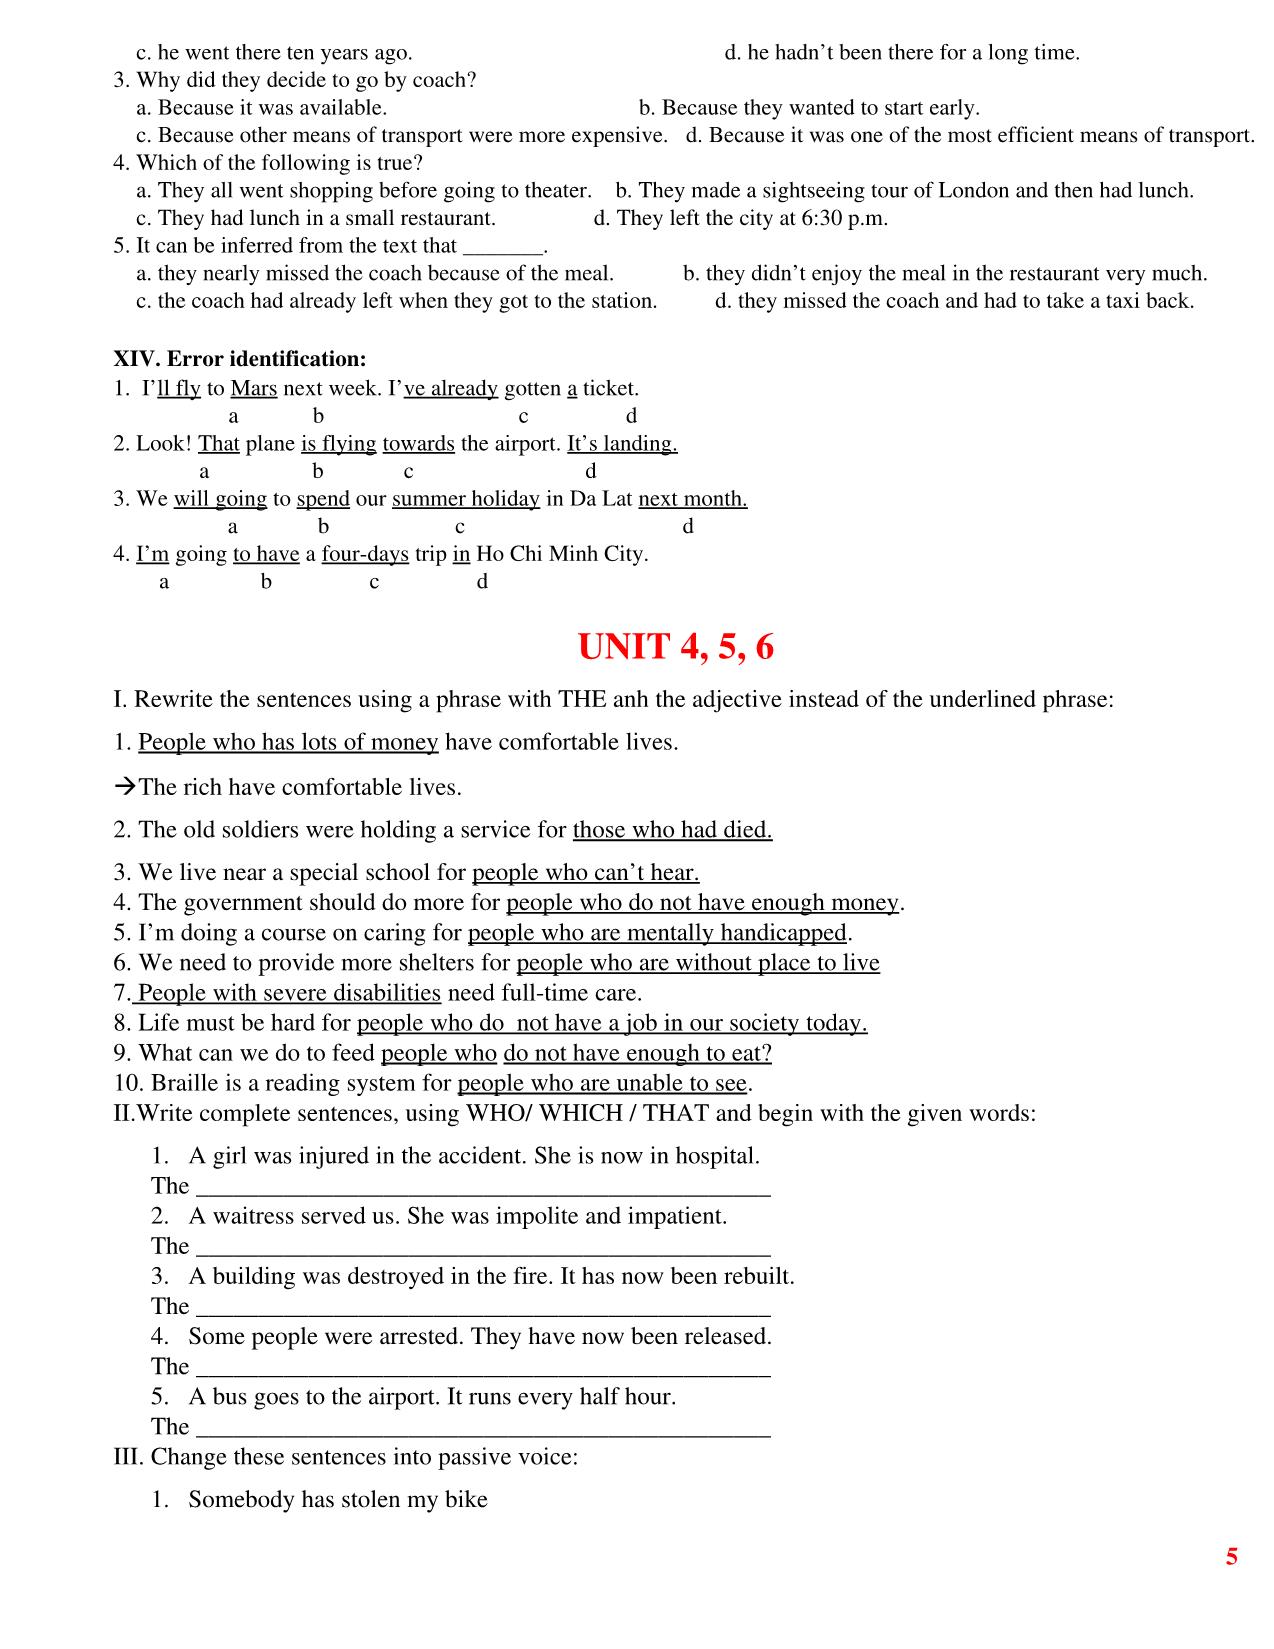 Bài tập tiếng Anh Lớp 10 -  Unit 4, 5, 6 trang 5